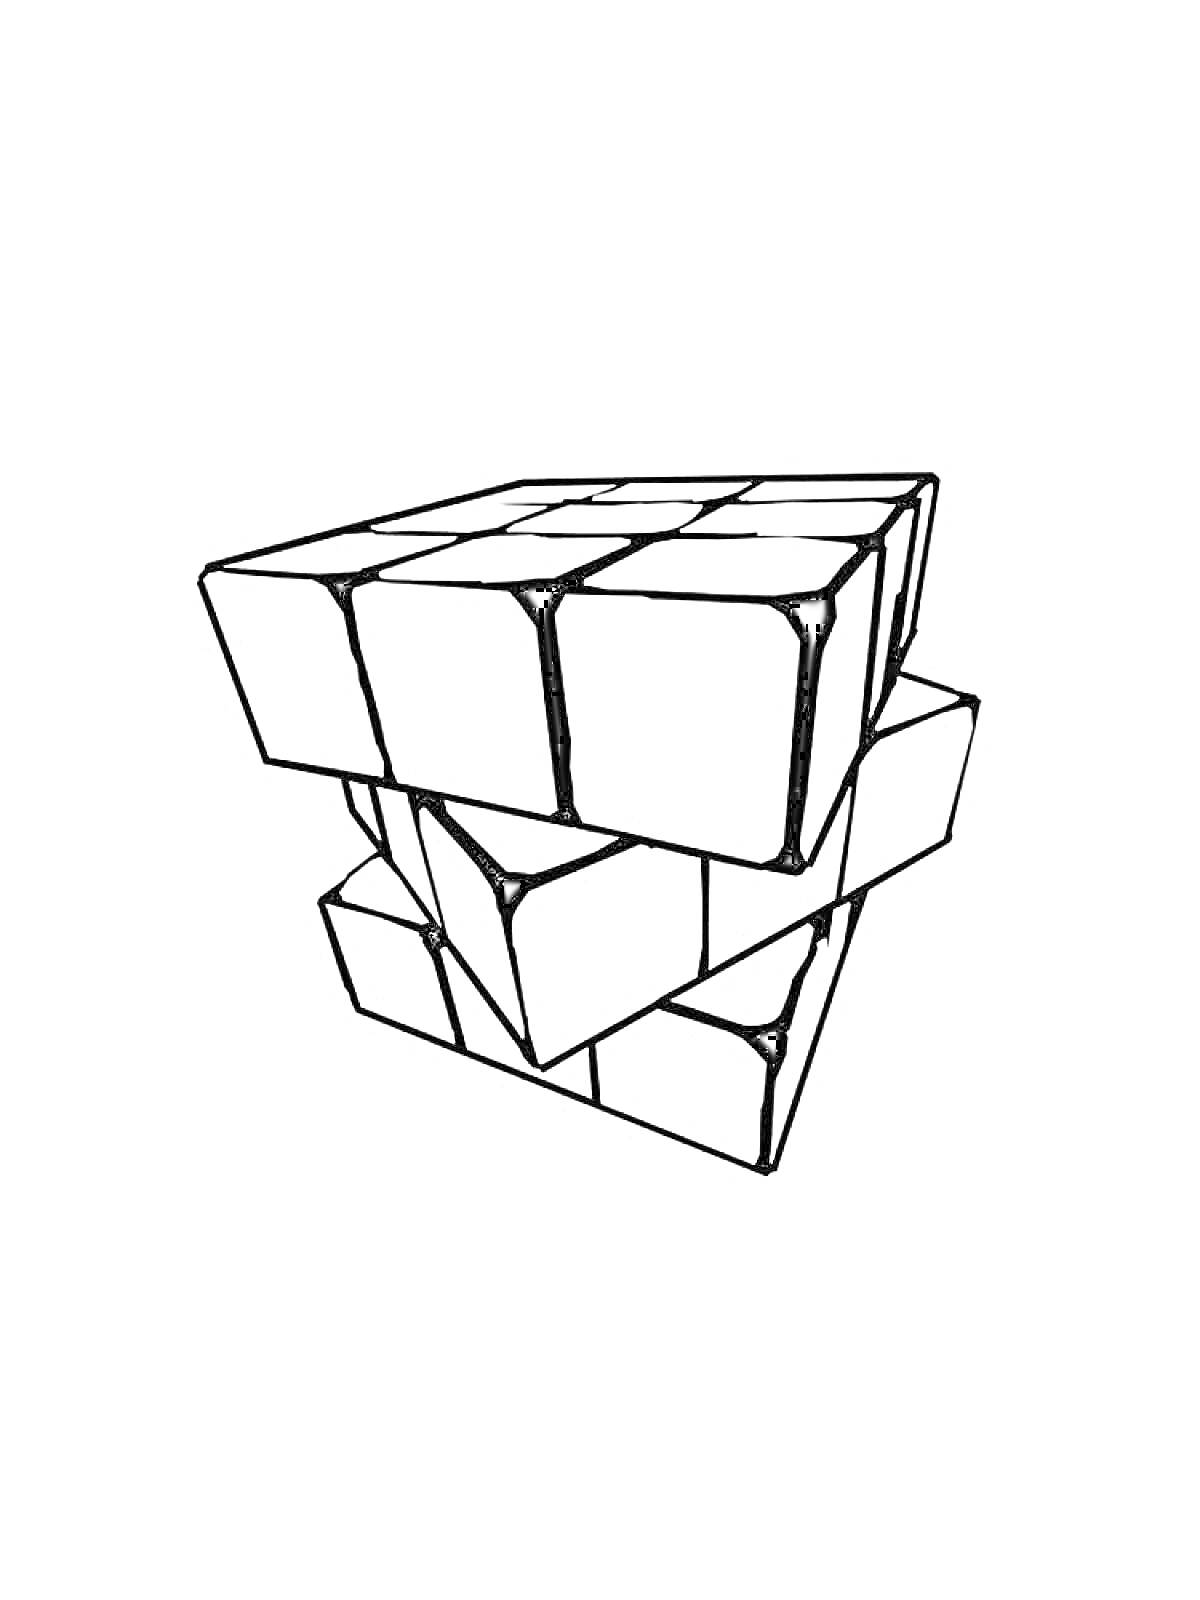 Разворотный кубик Рубика с отдельными черными линиями